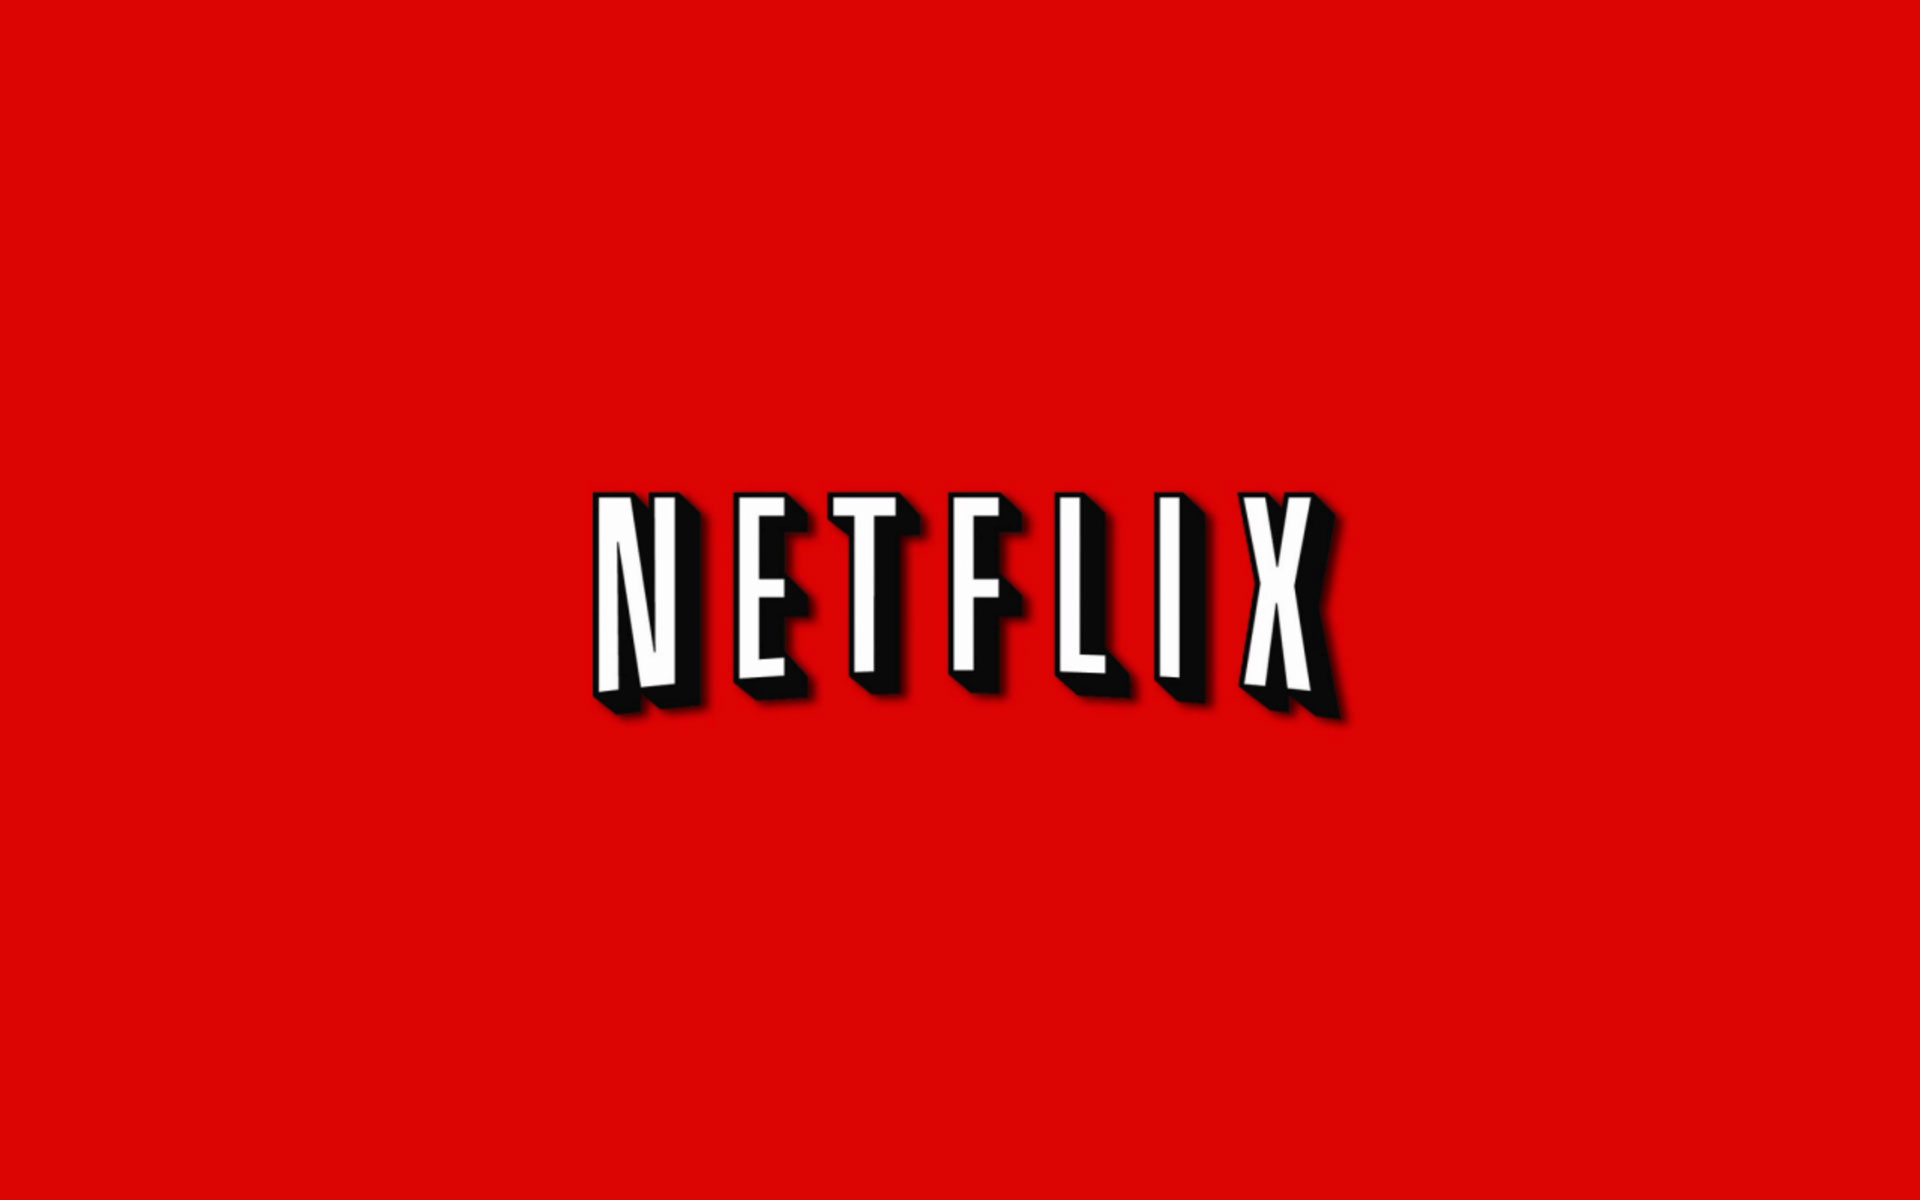 Netflix récupère un cinéma pour diffuser ses films